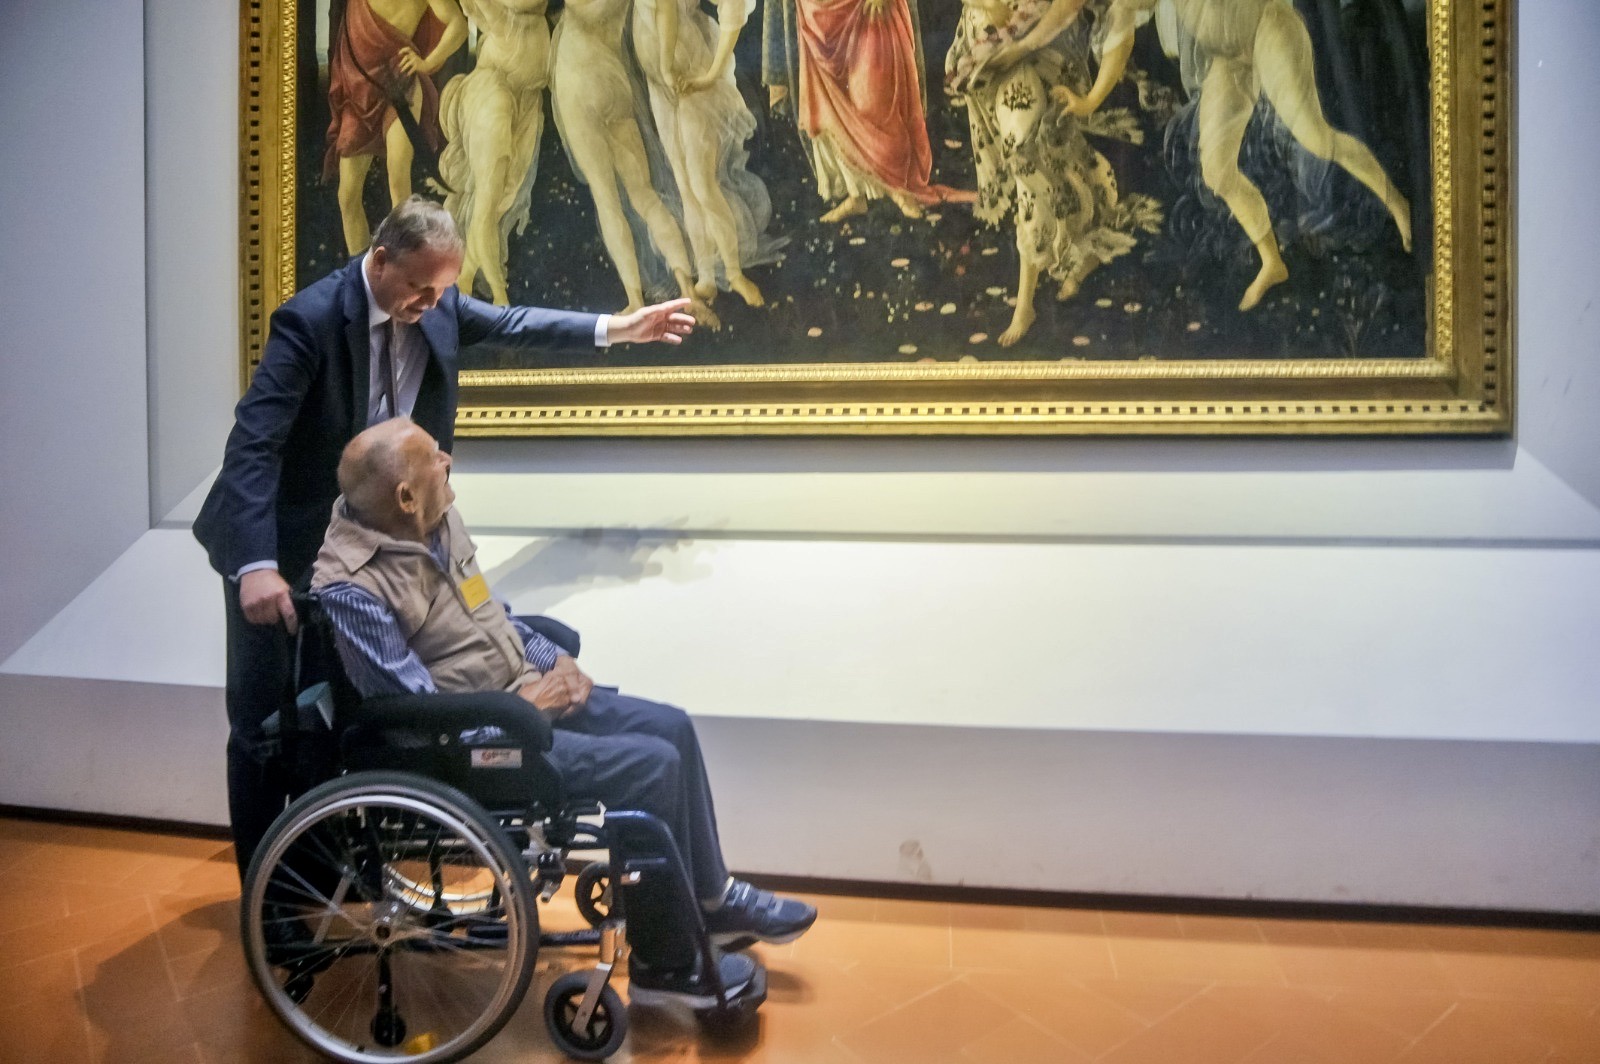 100 anni di amore per l'arte festeggiati agli Uffizi (Fonte foto Galleria degli Uffizi)